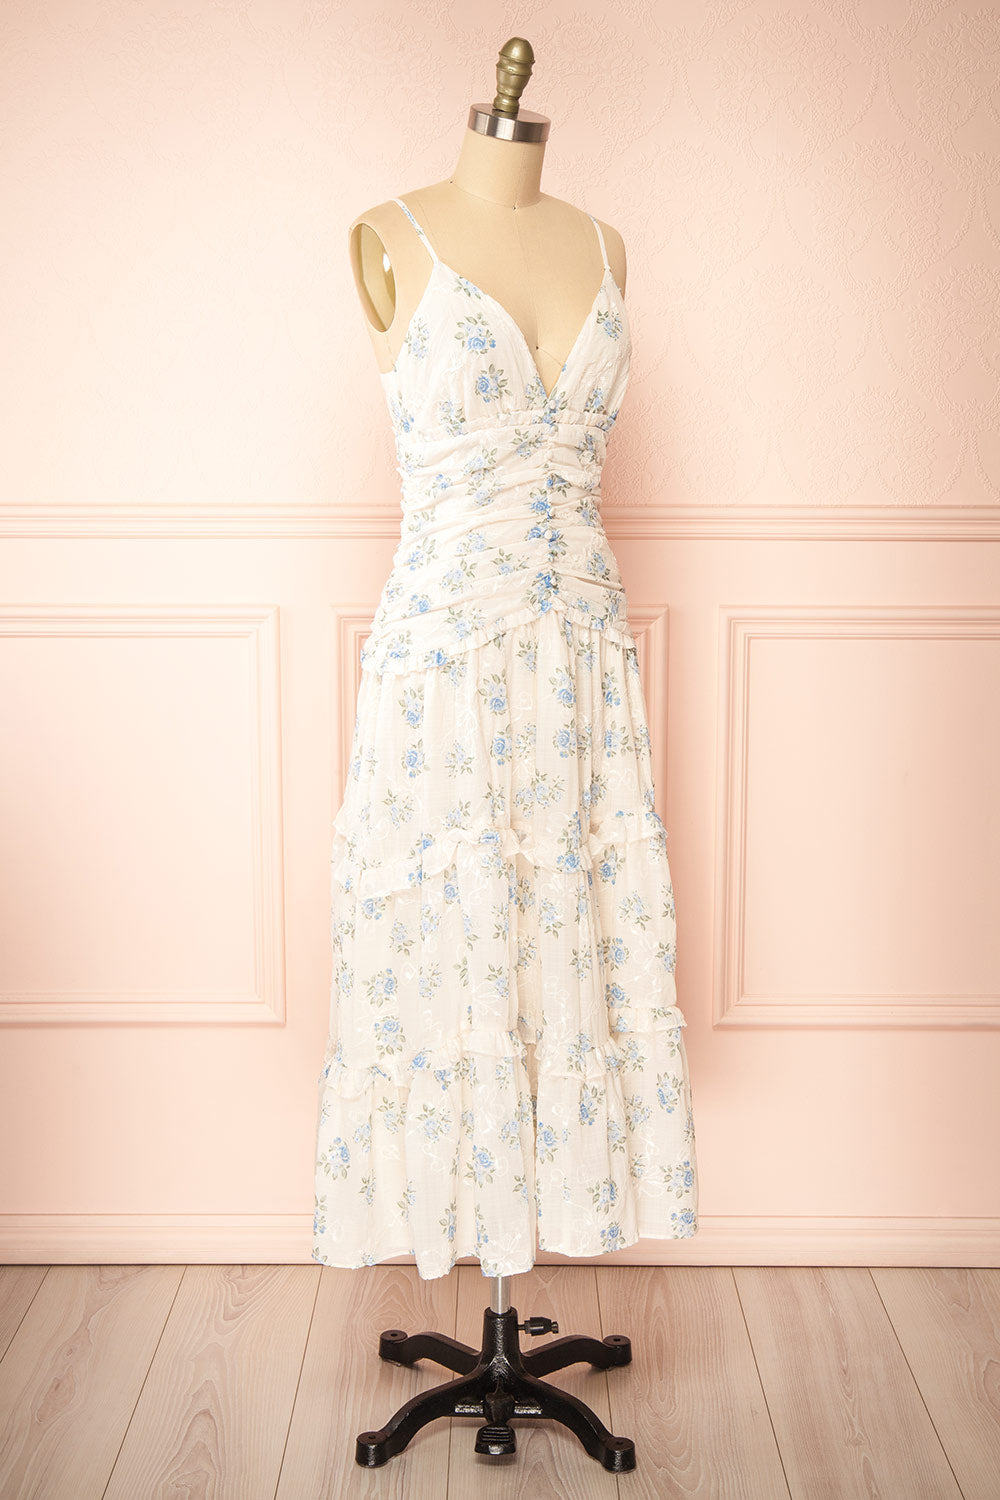 Ursula Long White Dress w/ Vintage Floral Motif | Boutique 1861 side view 